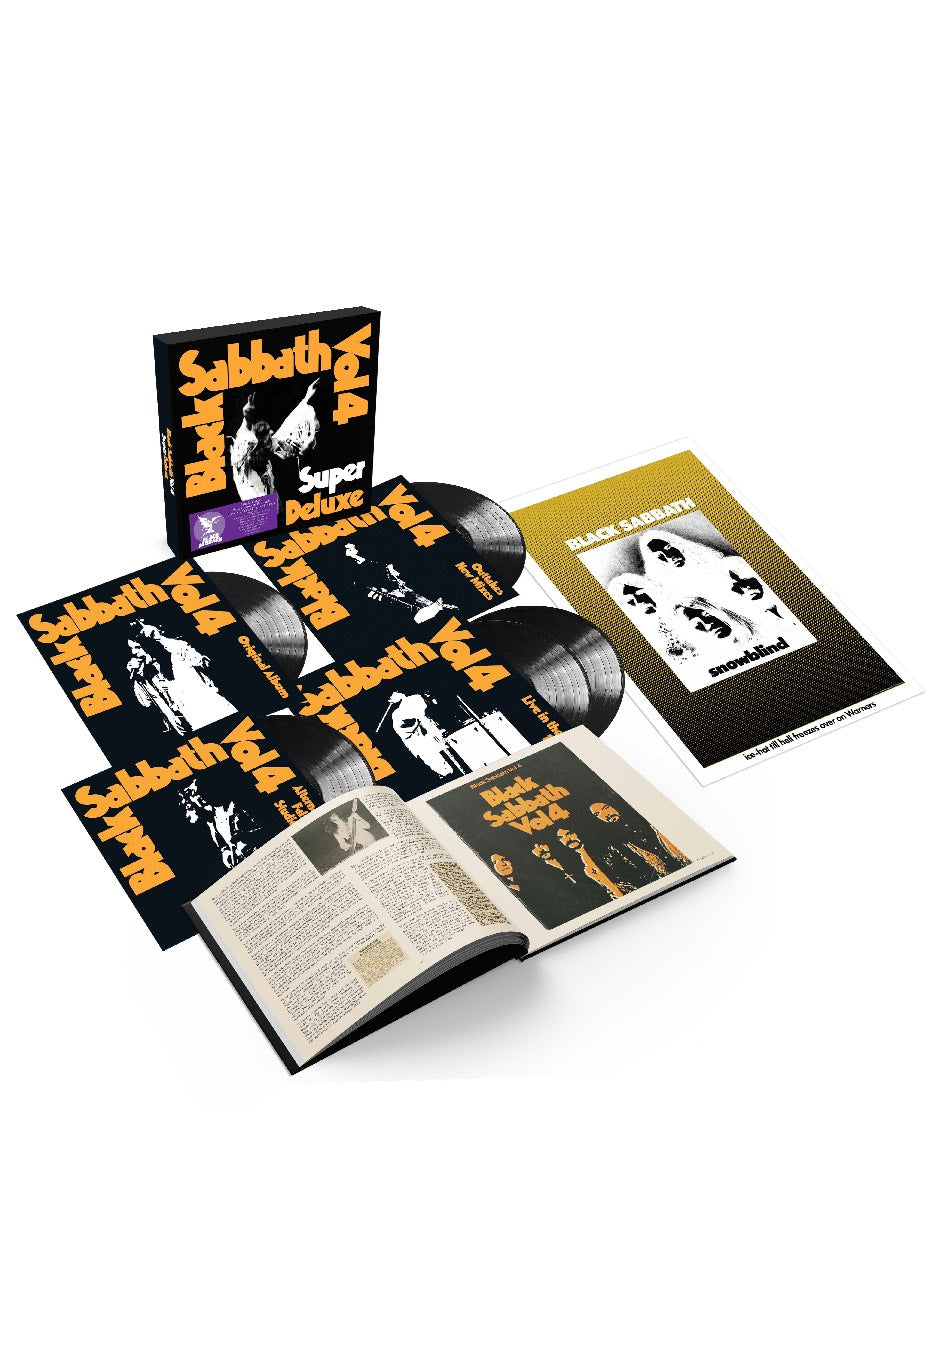 Black Sabbath - Vol.4 (Super Deluxe) - Vinyl Box